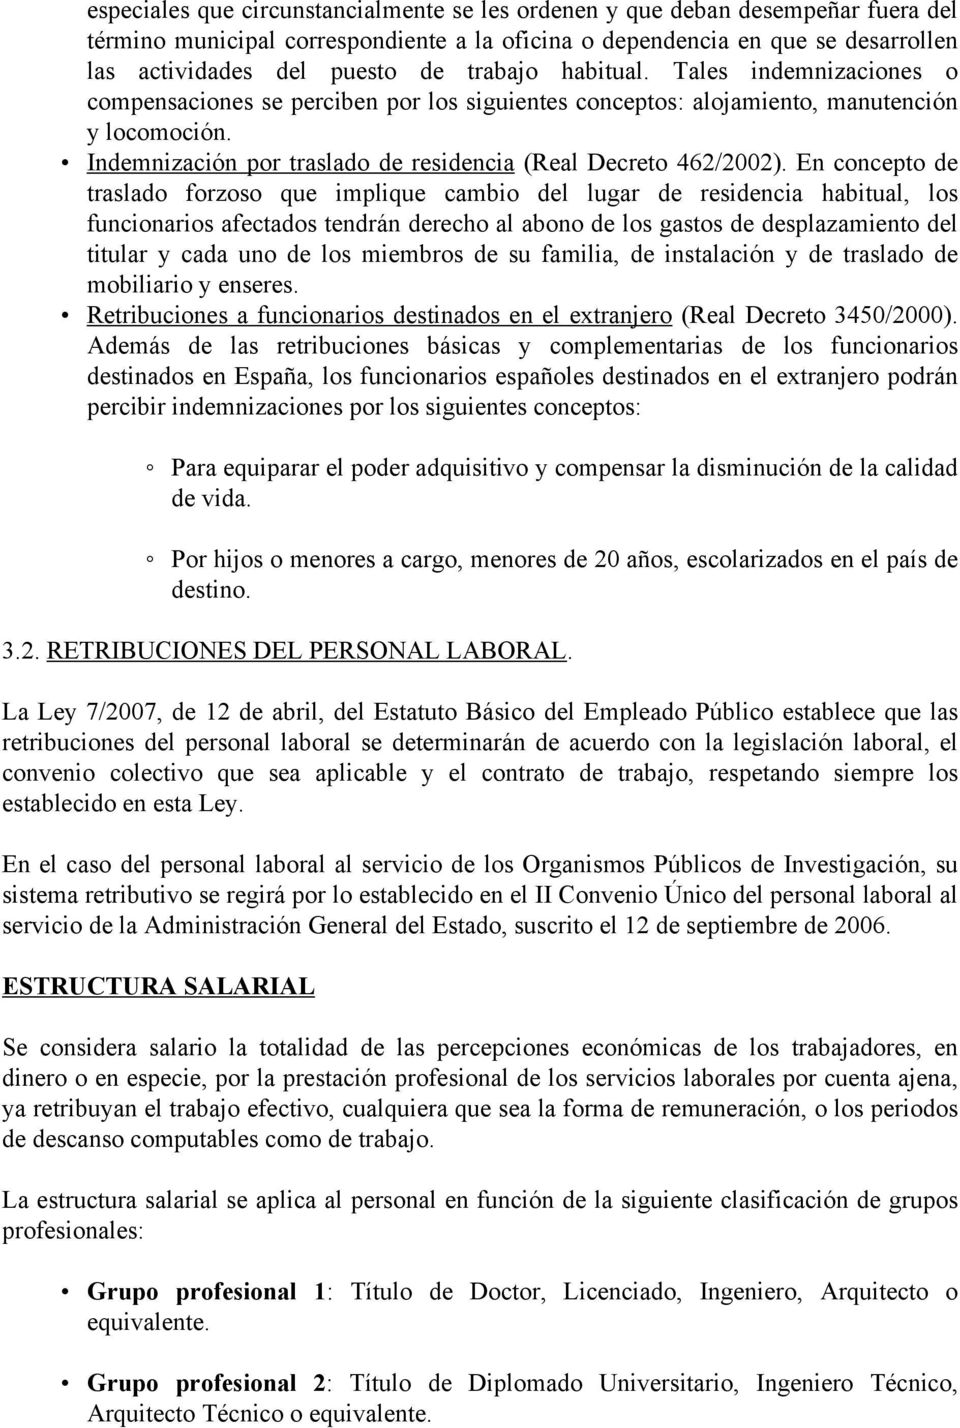 Indemnización por traslado de residencia (Real Decreto 462/2002).